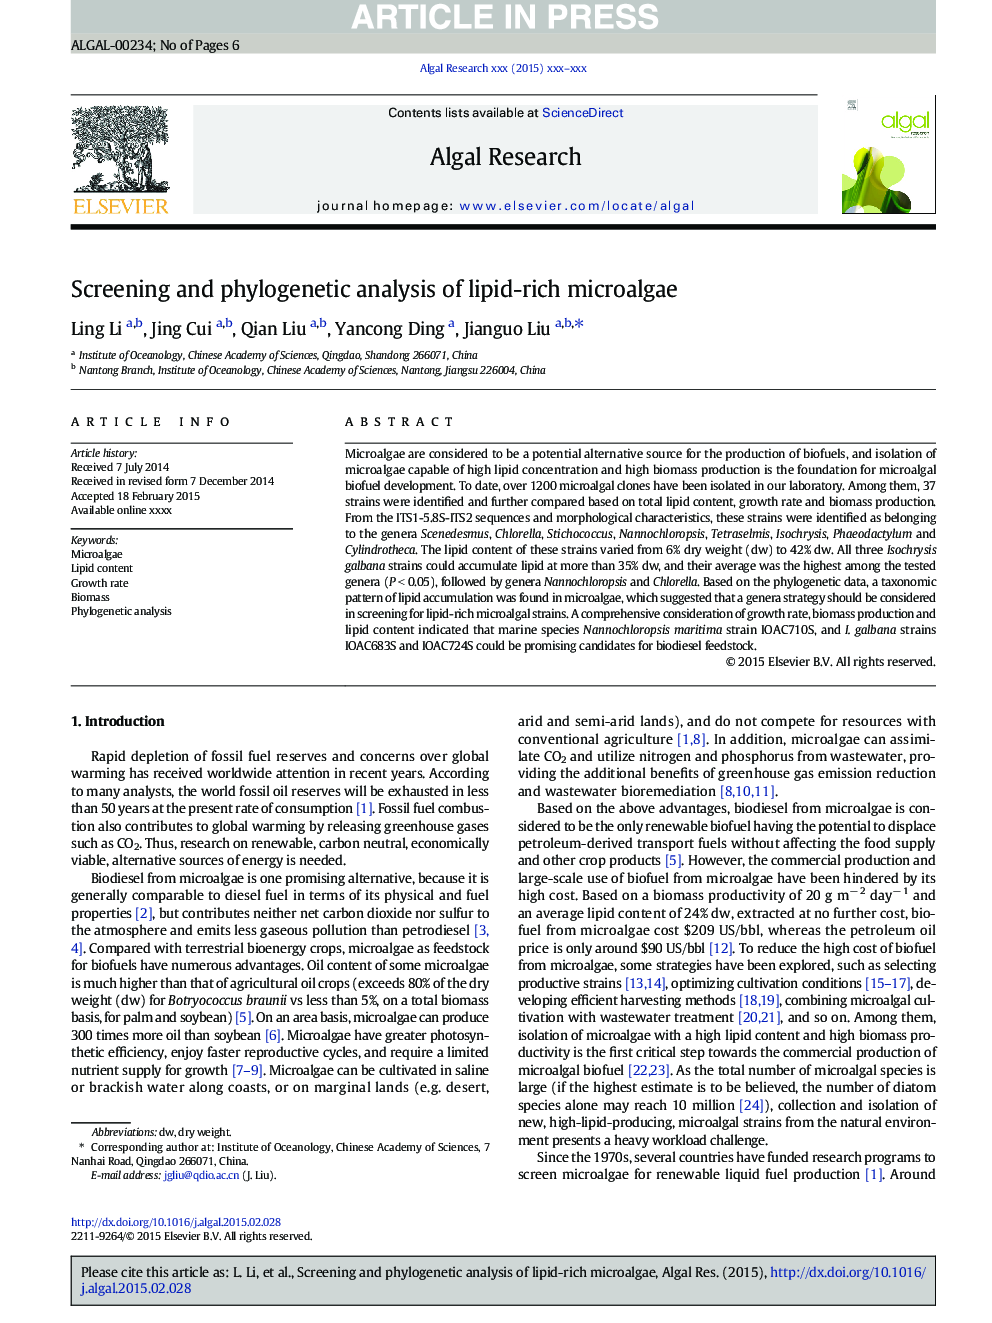 تجزیه و تحلیل و تجزیه و تحلیل فیلوژنتیک از میکروالگوهای غنی از چربی 